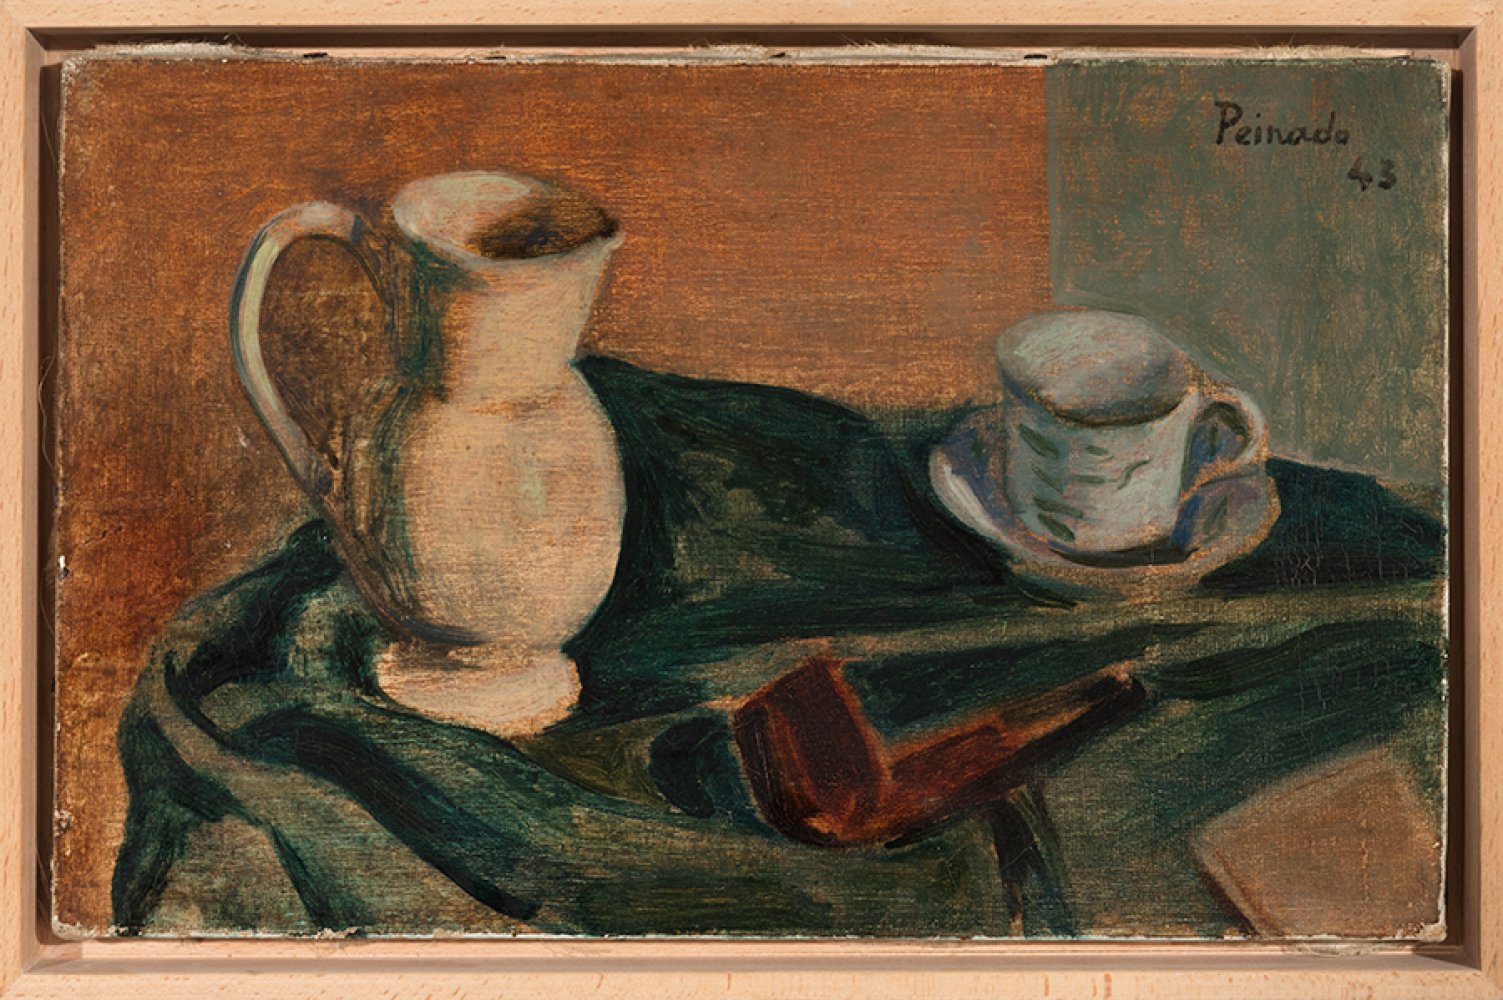 JOAQUÍN PEINADO (Ronda, Malaga, 1898 - Paris, 1975)."Composition with a Pipe", 1943.Oil on canvas. - Image 5 of 5